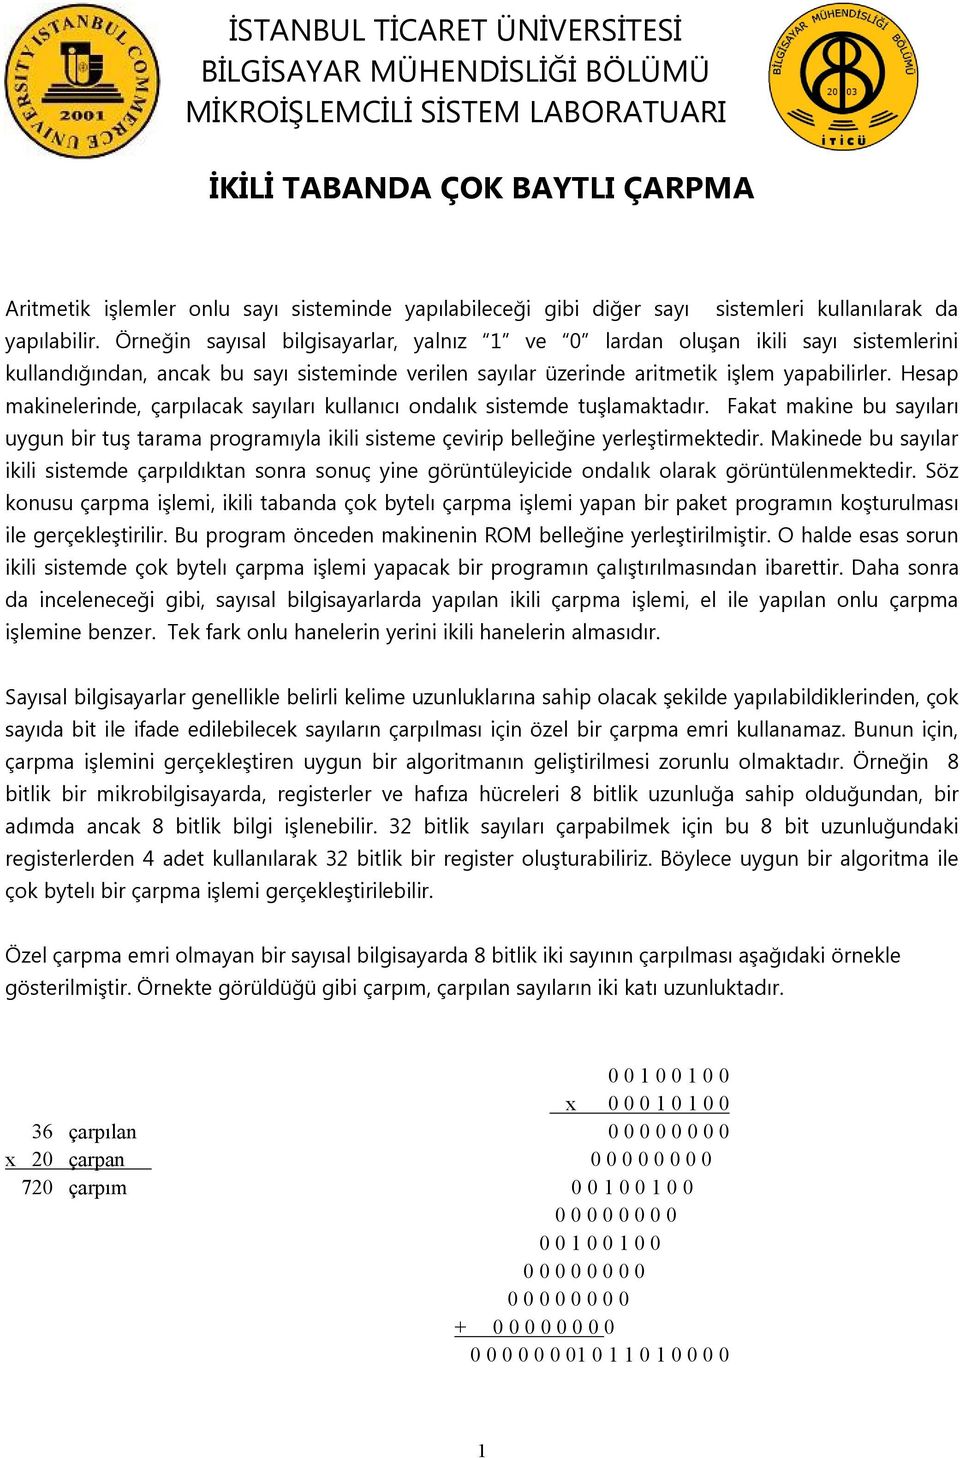 Örneğin sayısal bilgisayarlar, yalnız 1 ve 0 lardan oluşan ikili sayı sistemlerini kullandığından, ancak bu sayı sisteminde verilen sayılar üzerinde aritmetik işlem yapabilirler.